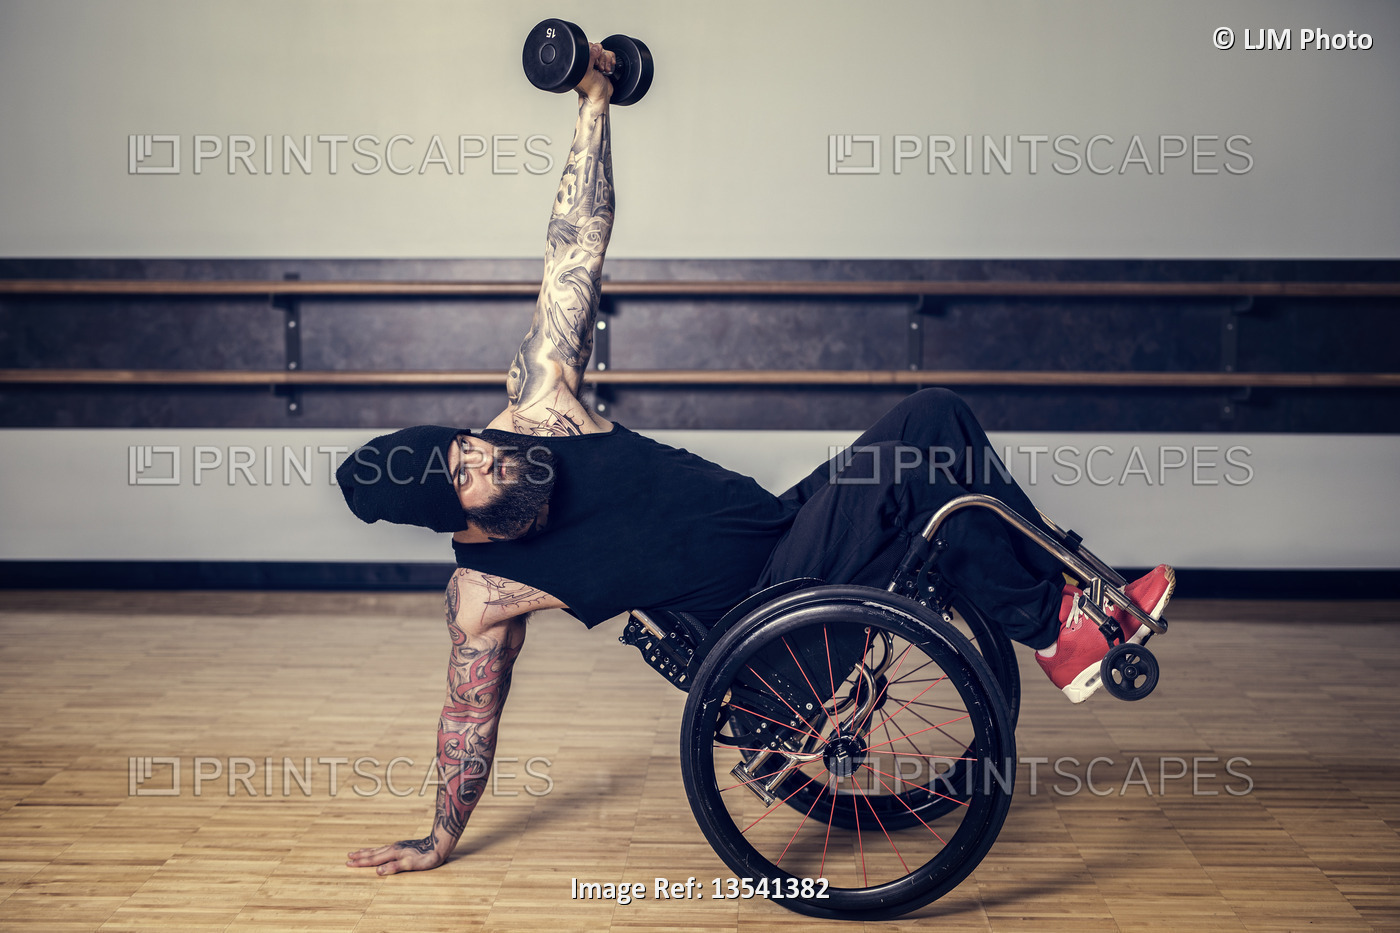 A paraplegic man popping a wheelie in his wheelchair and balancing while ...